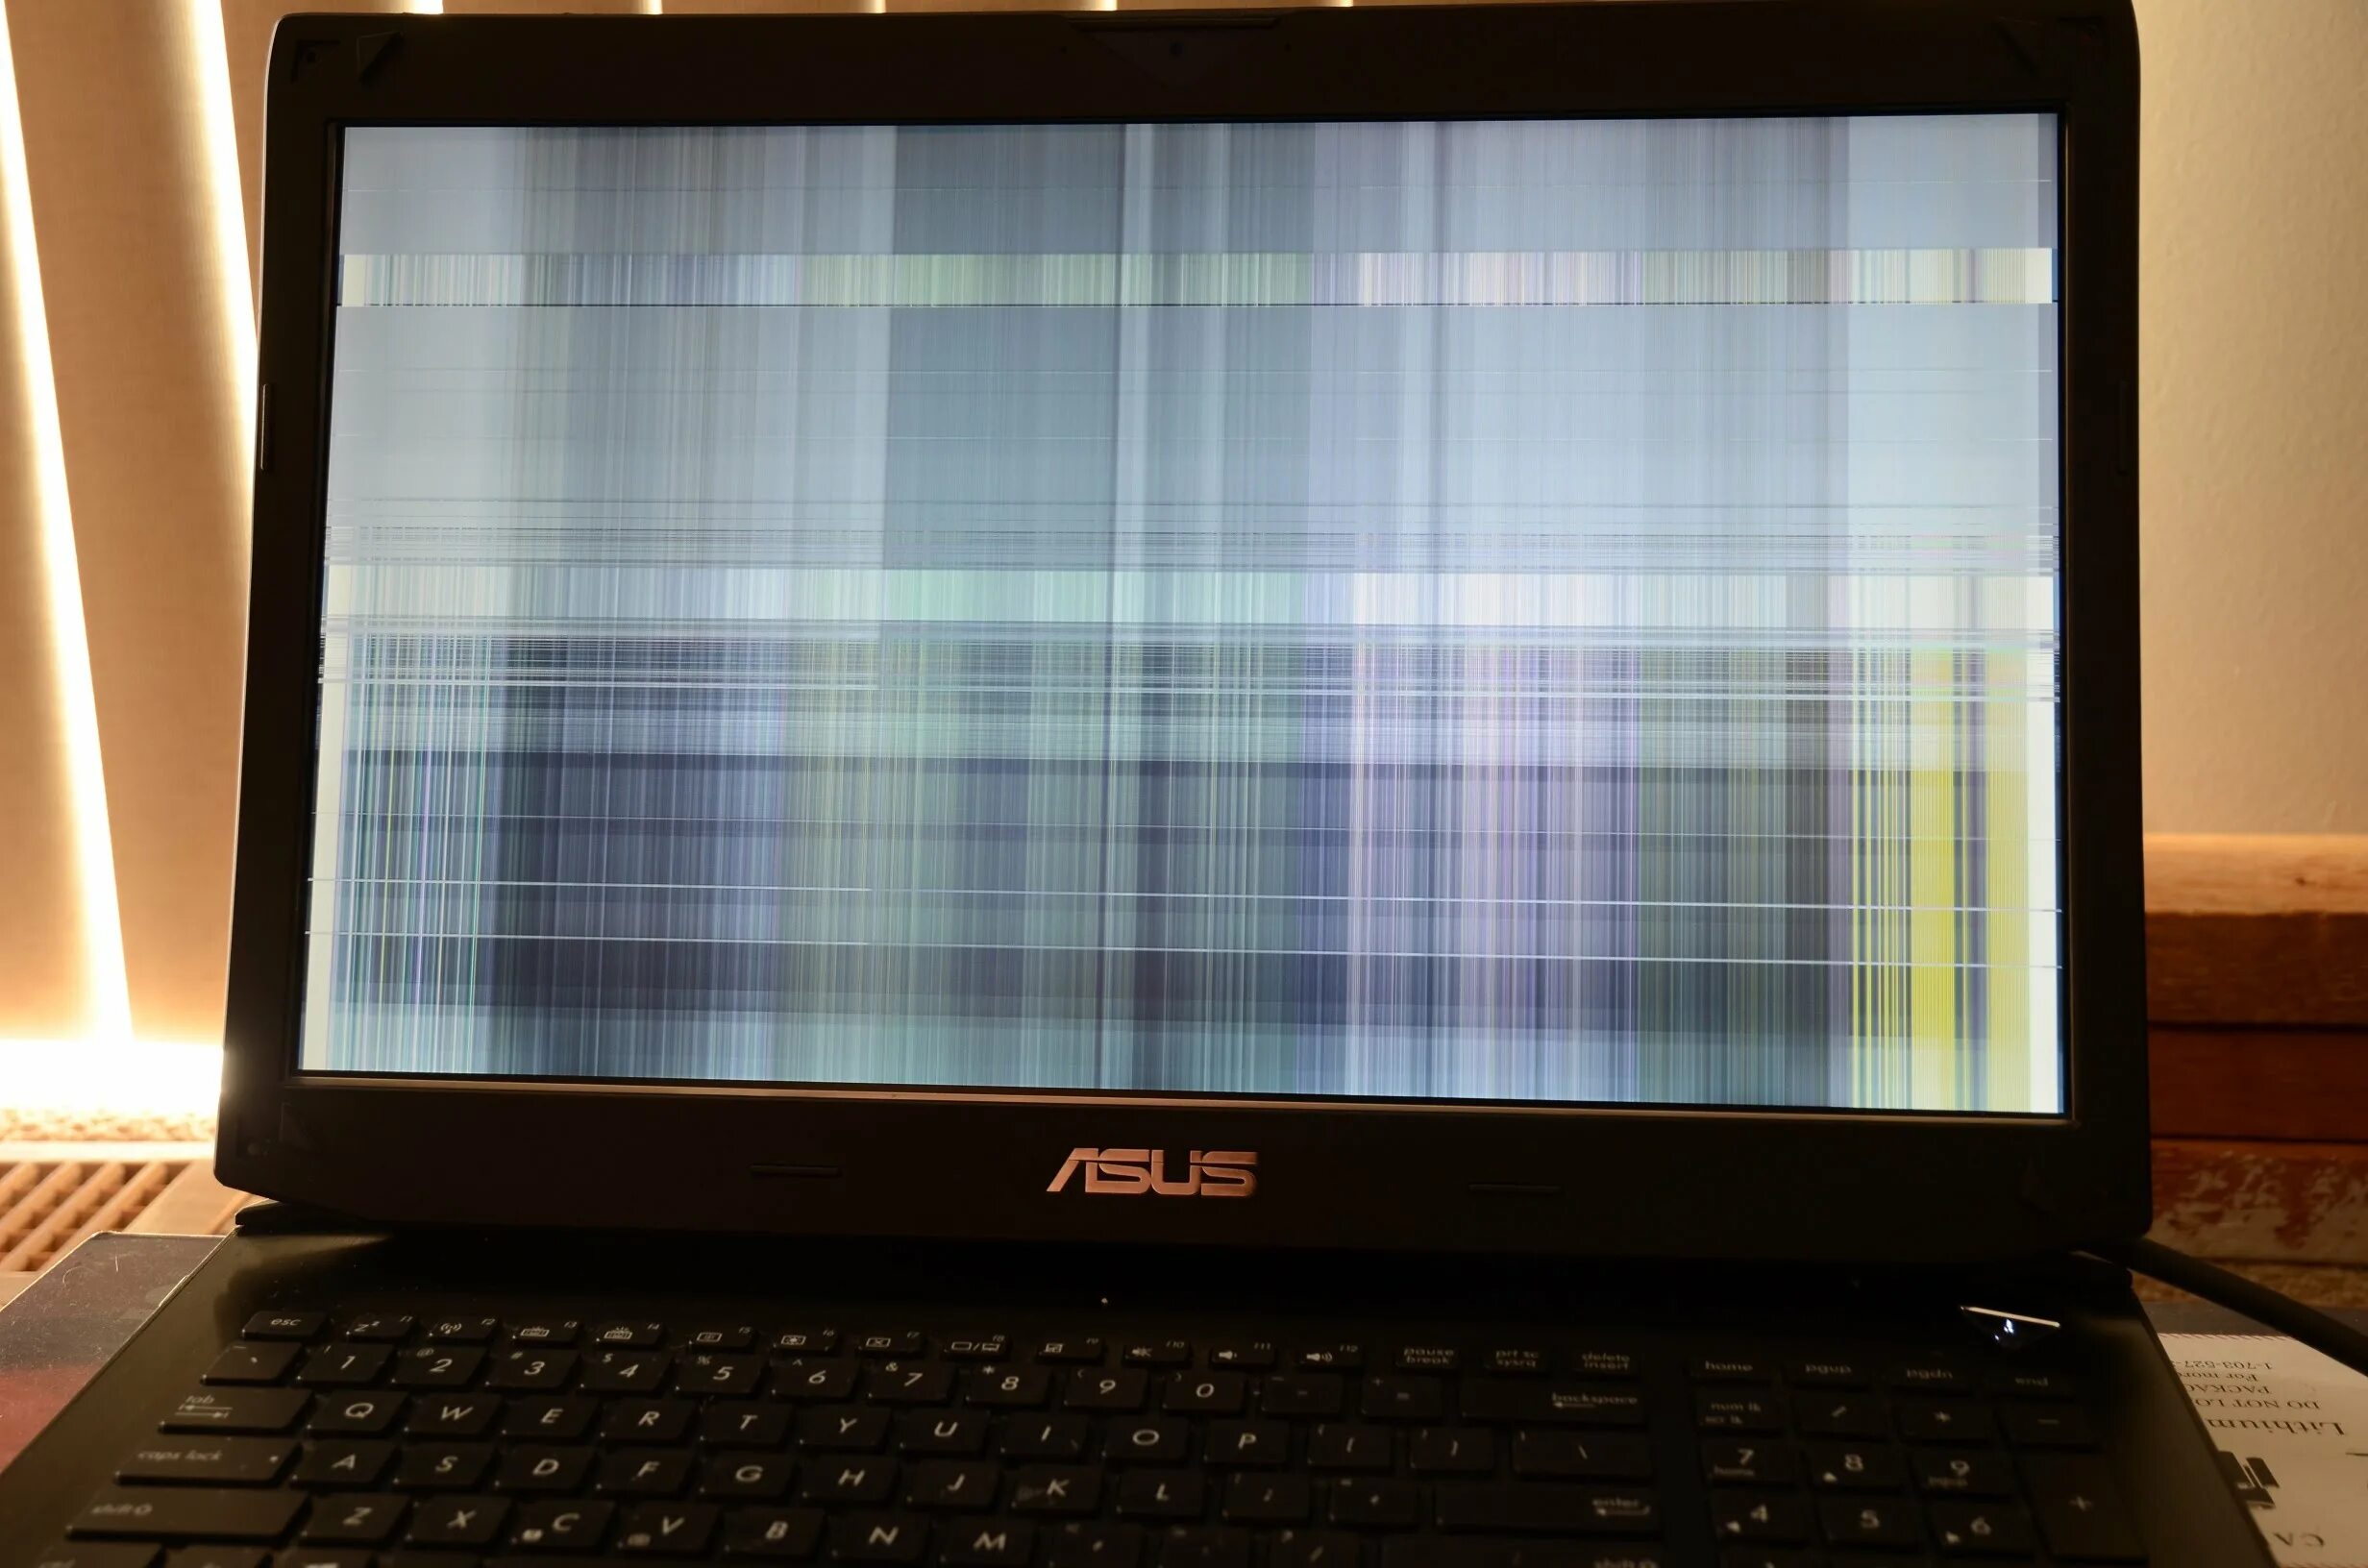 ASUS Laptop's Screen. Монитор ноутбука асус. Разбитый экран ноутбука. Ноутбук с разбитым экраном. Экран простого ноутбука